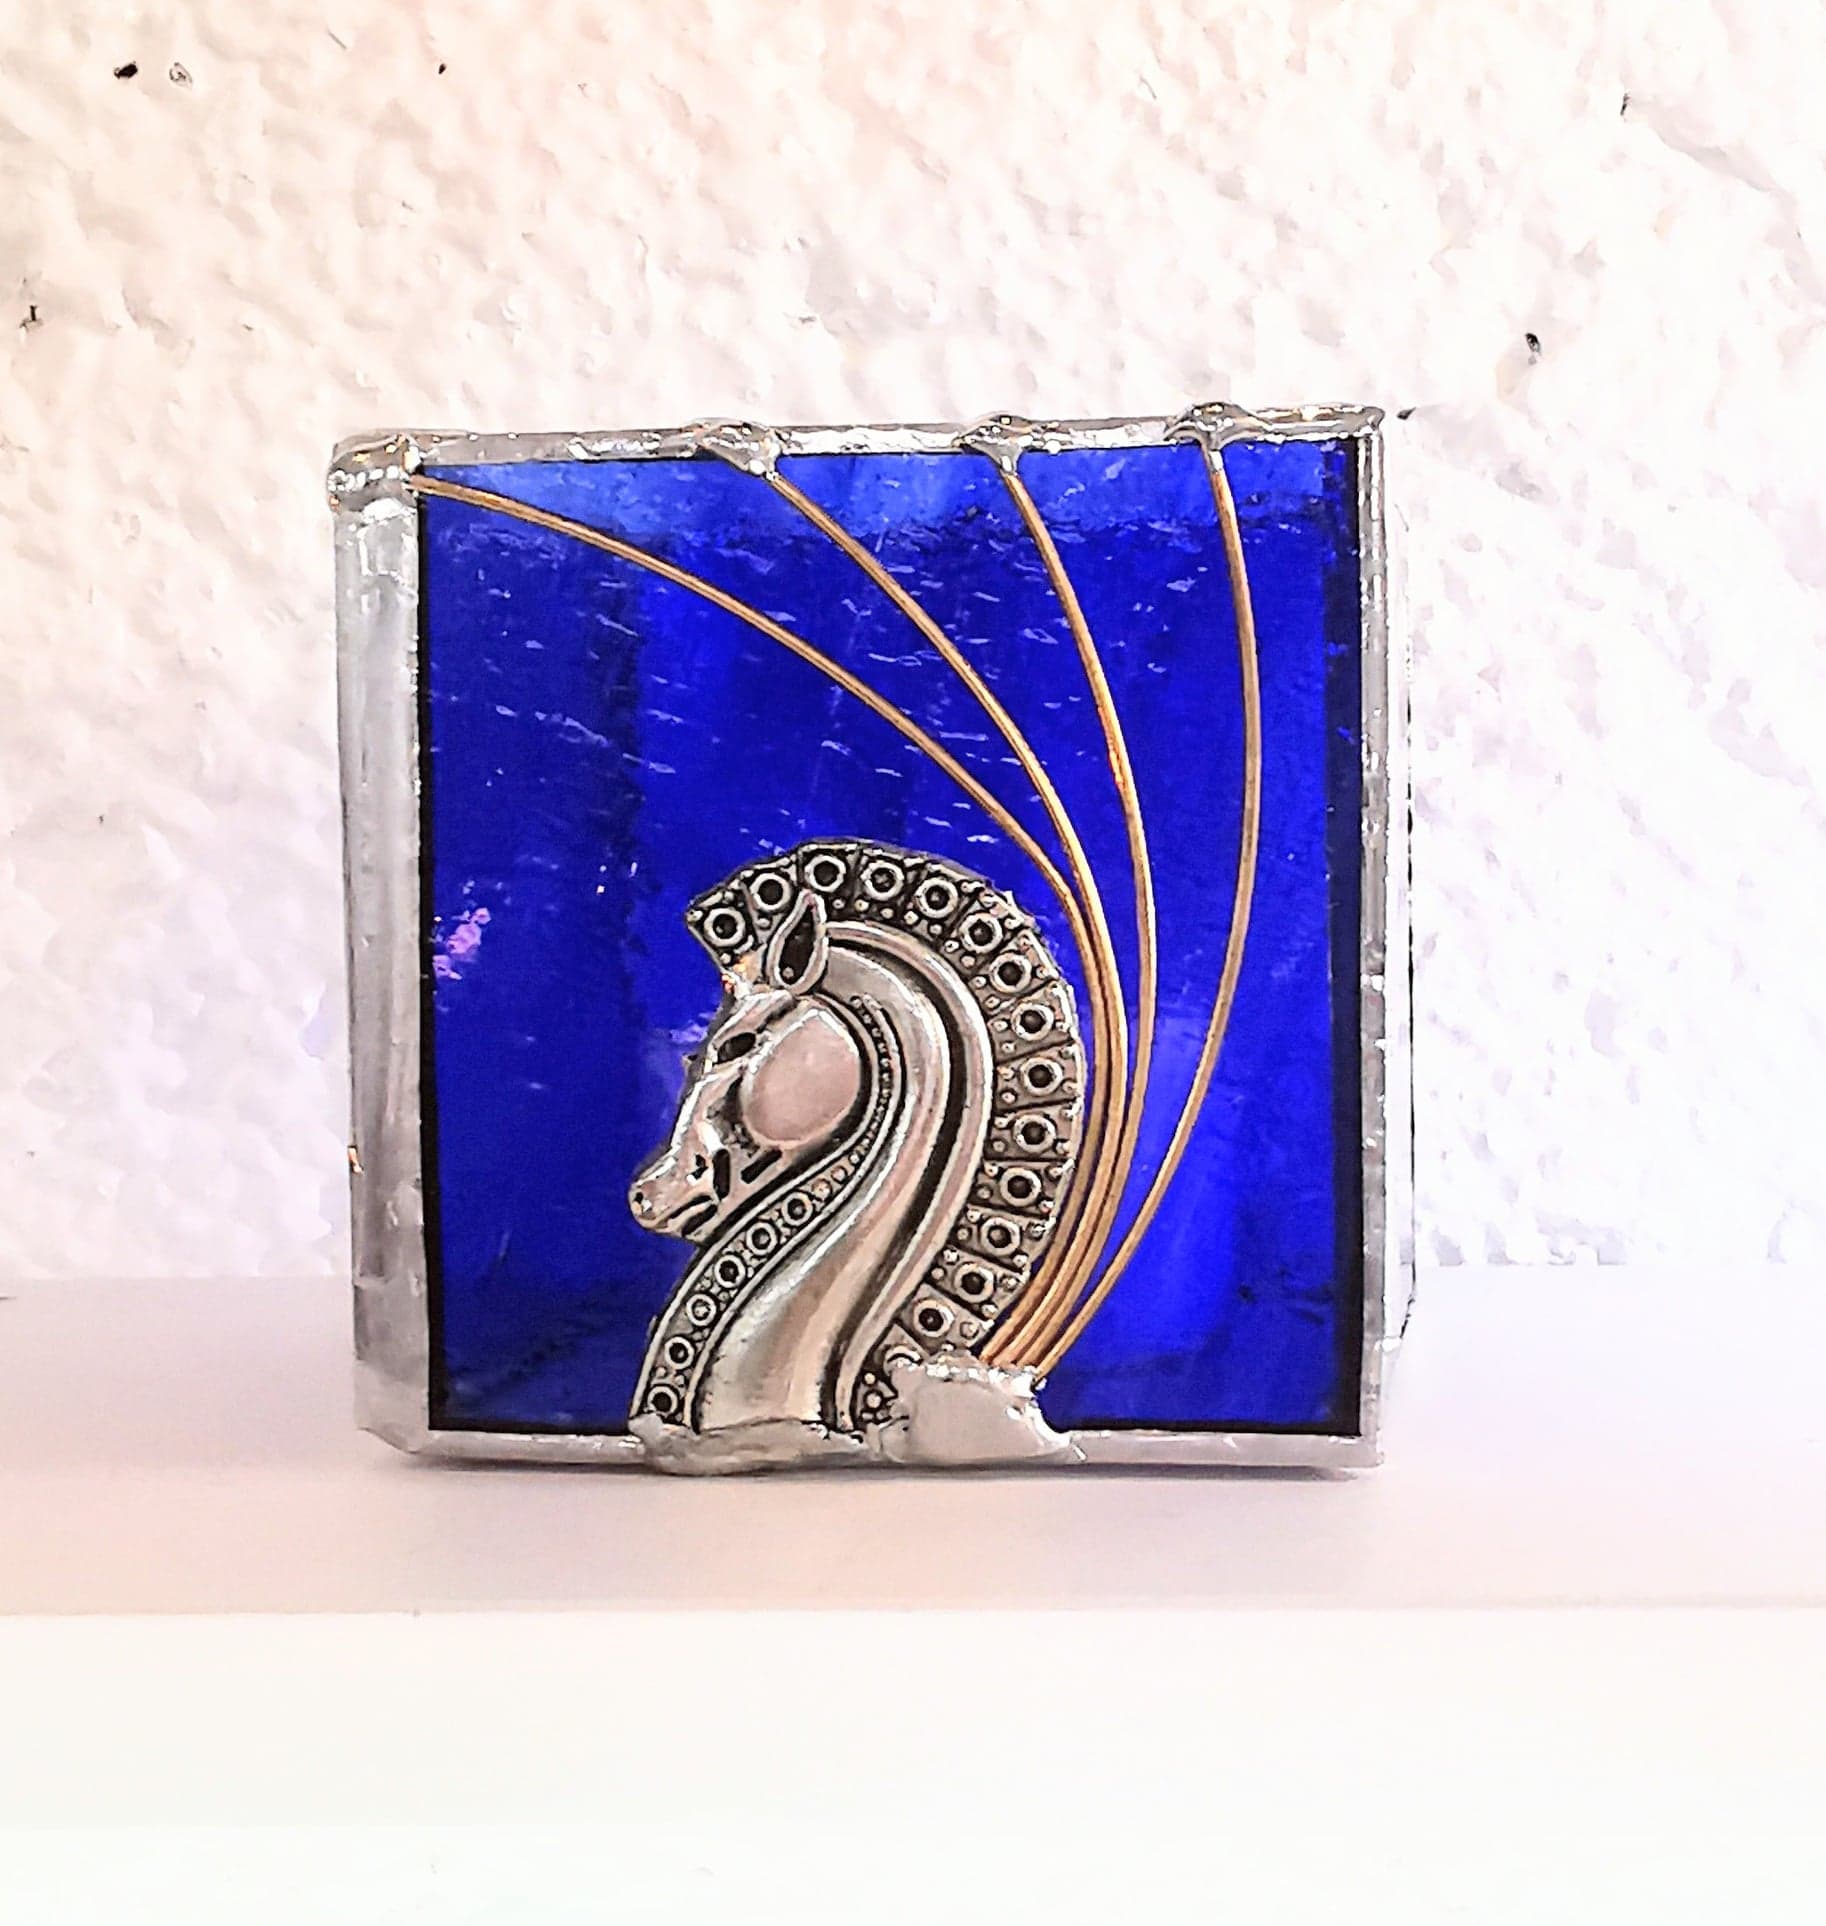 Photophore en verre bleu vitrail et cheval métal FOKC271e_30€